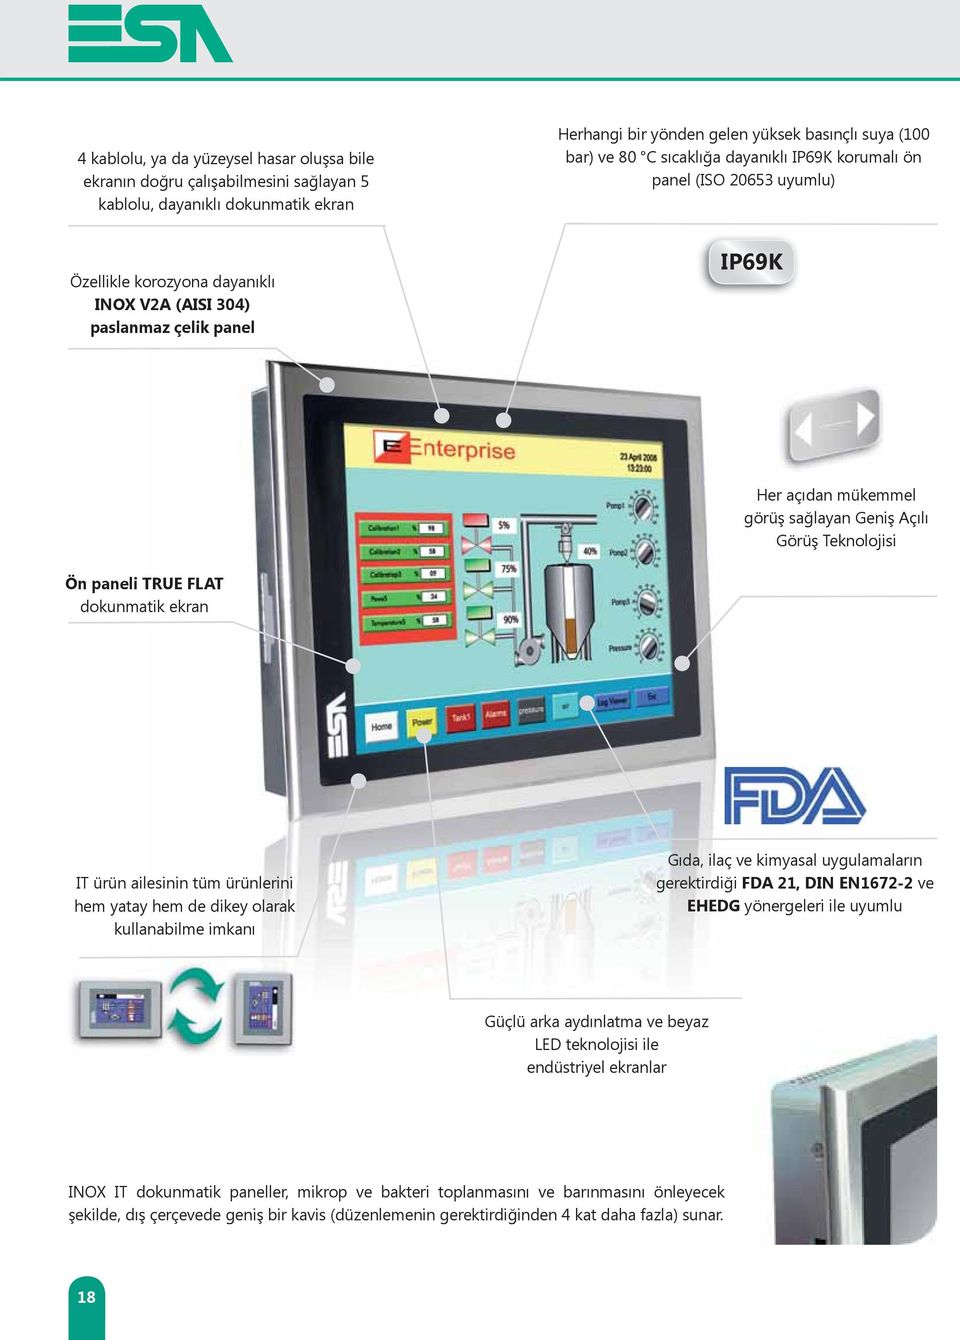 paneli TRUE FLAT dokunmatik ekran IT ürün ailesinin tüm ürünlerini hem yatay hem de dikey olarak kullanabilme imkanı Gıda, ilaç ve kimyasal uygulamaların gerektirdiği FDA 21, DIN EN1672-2 ve EHEDG